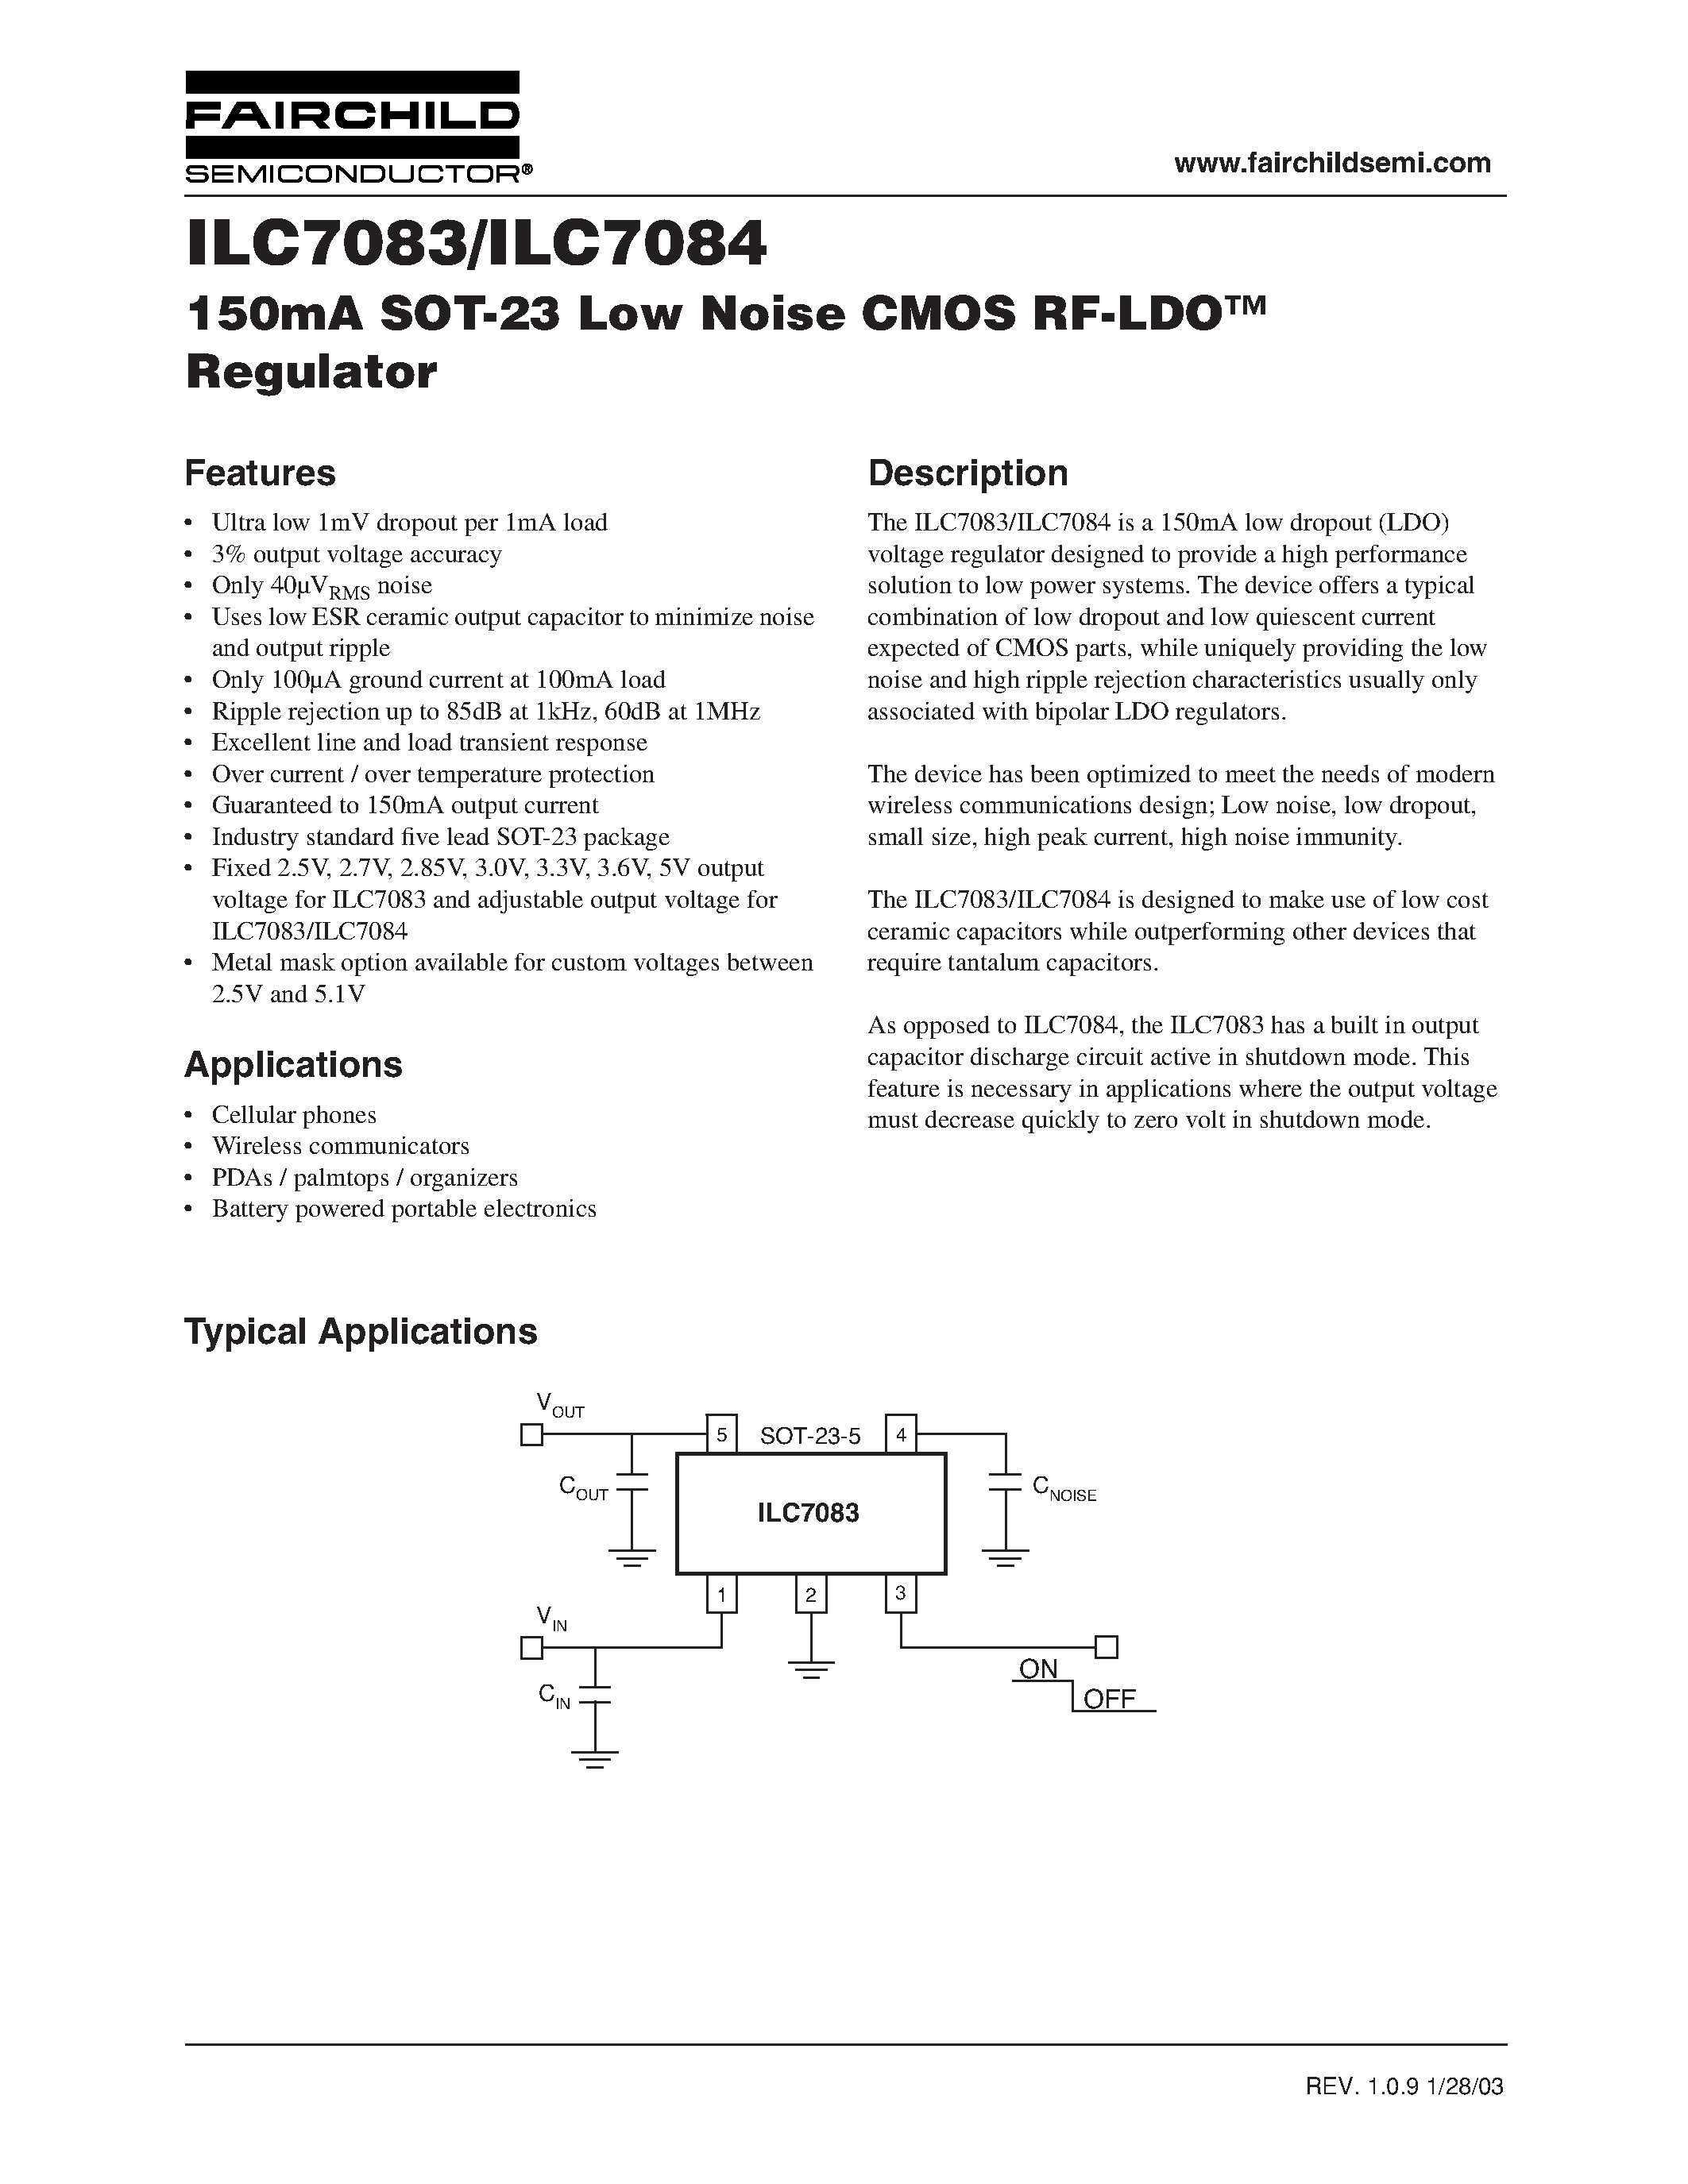 Даташит ILC7084 - 150mA SOT-23 Low Noise CMOS RF-LDO Regulator страница 1